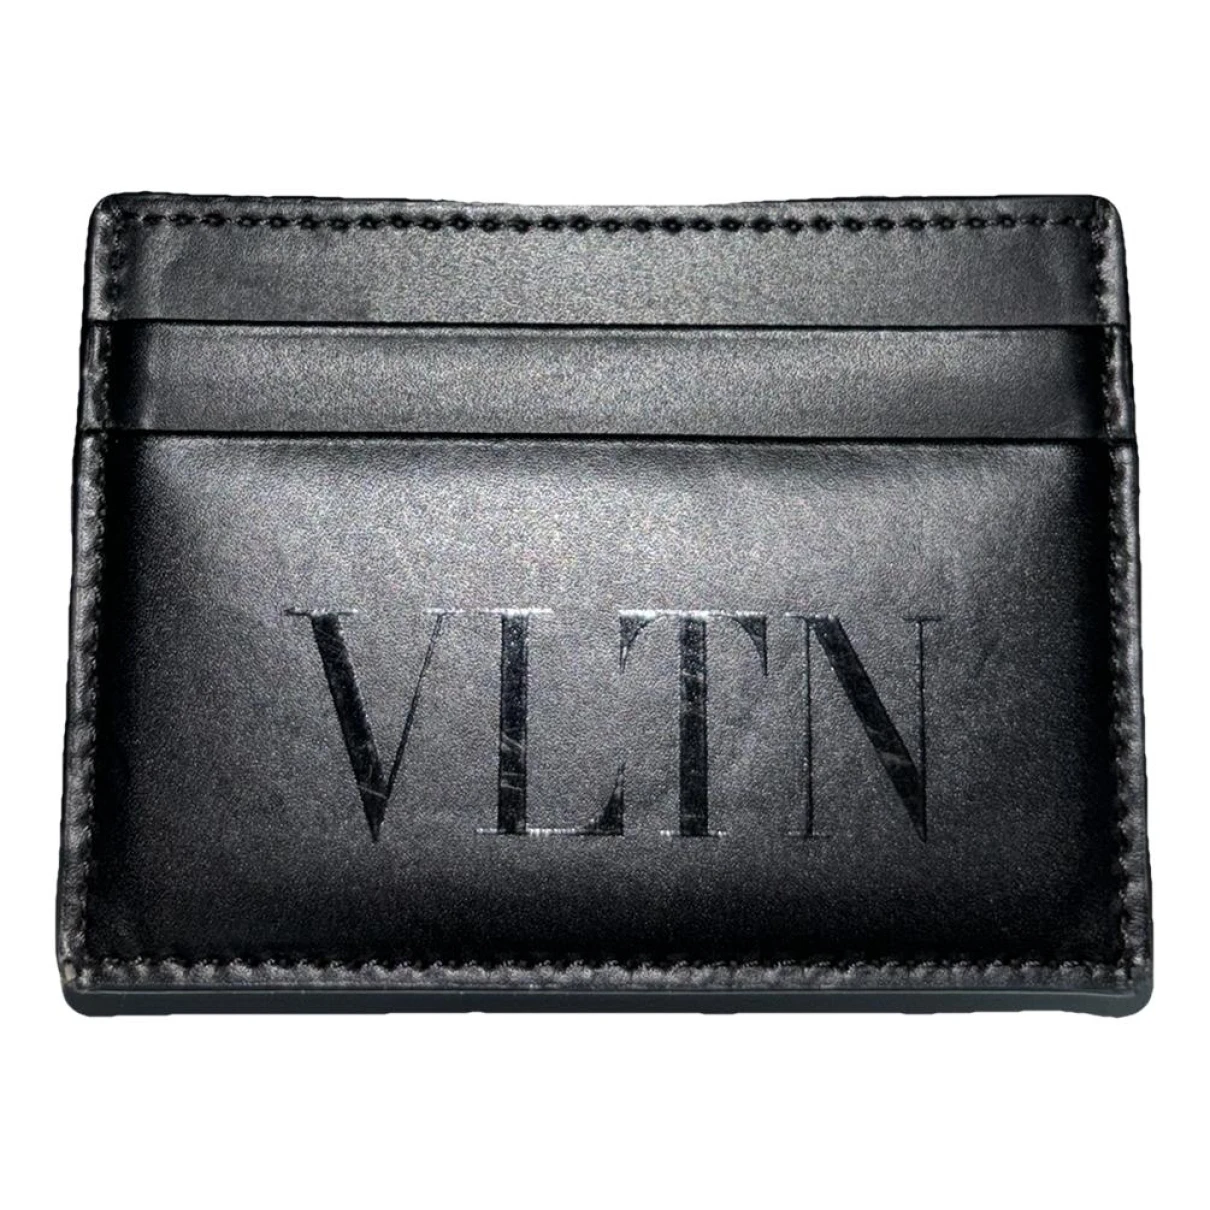 Pre-owned Valentino Garavani Leather Small Bag In Black